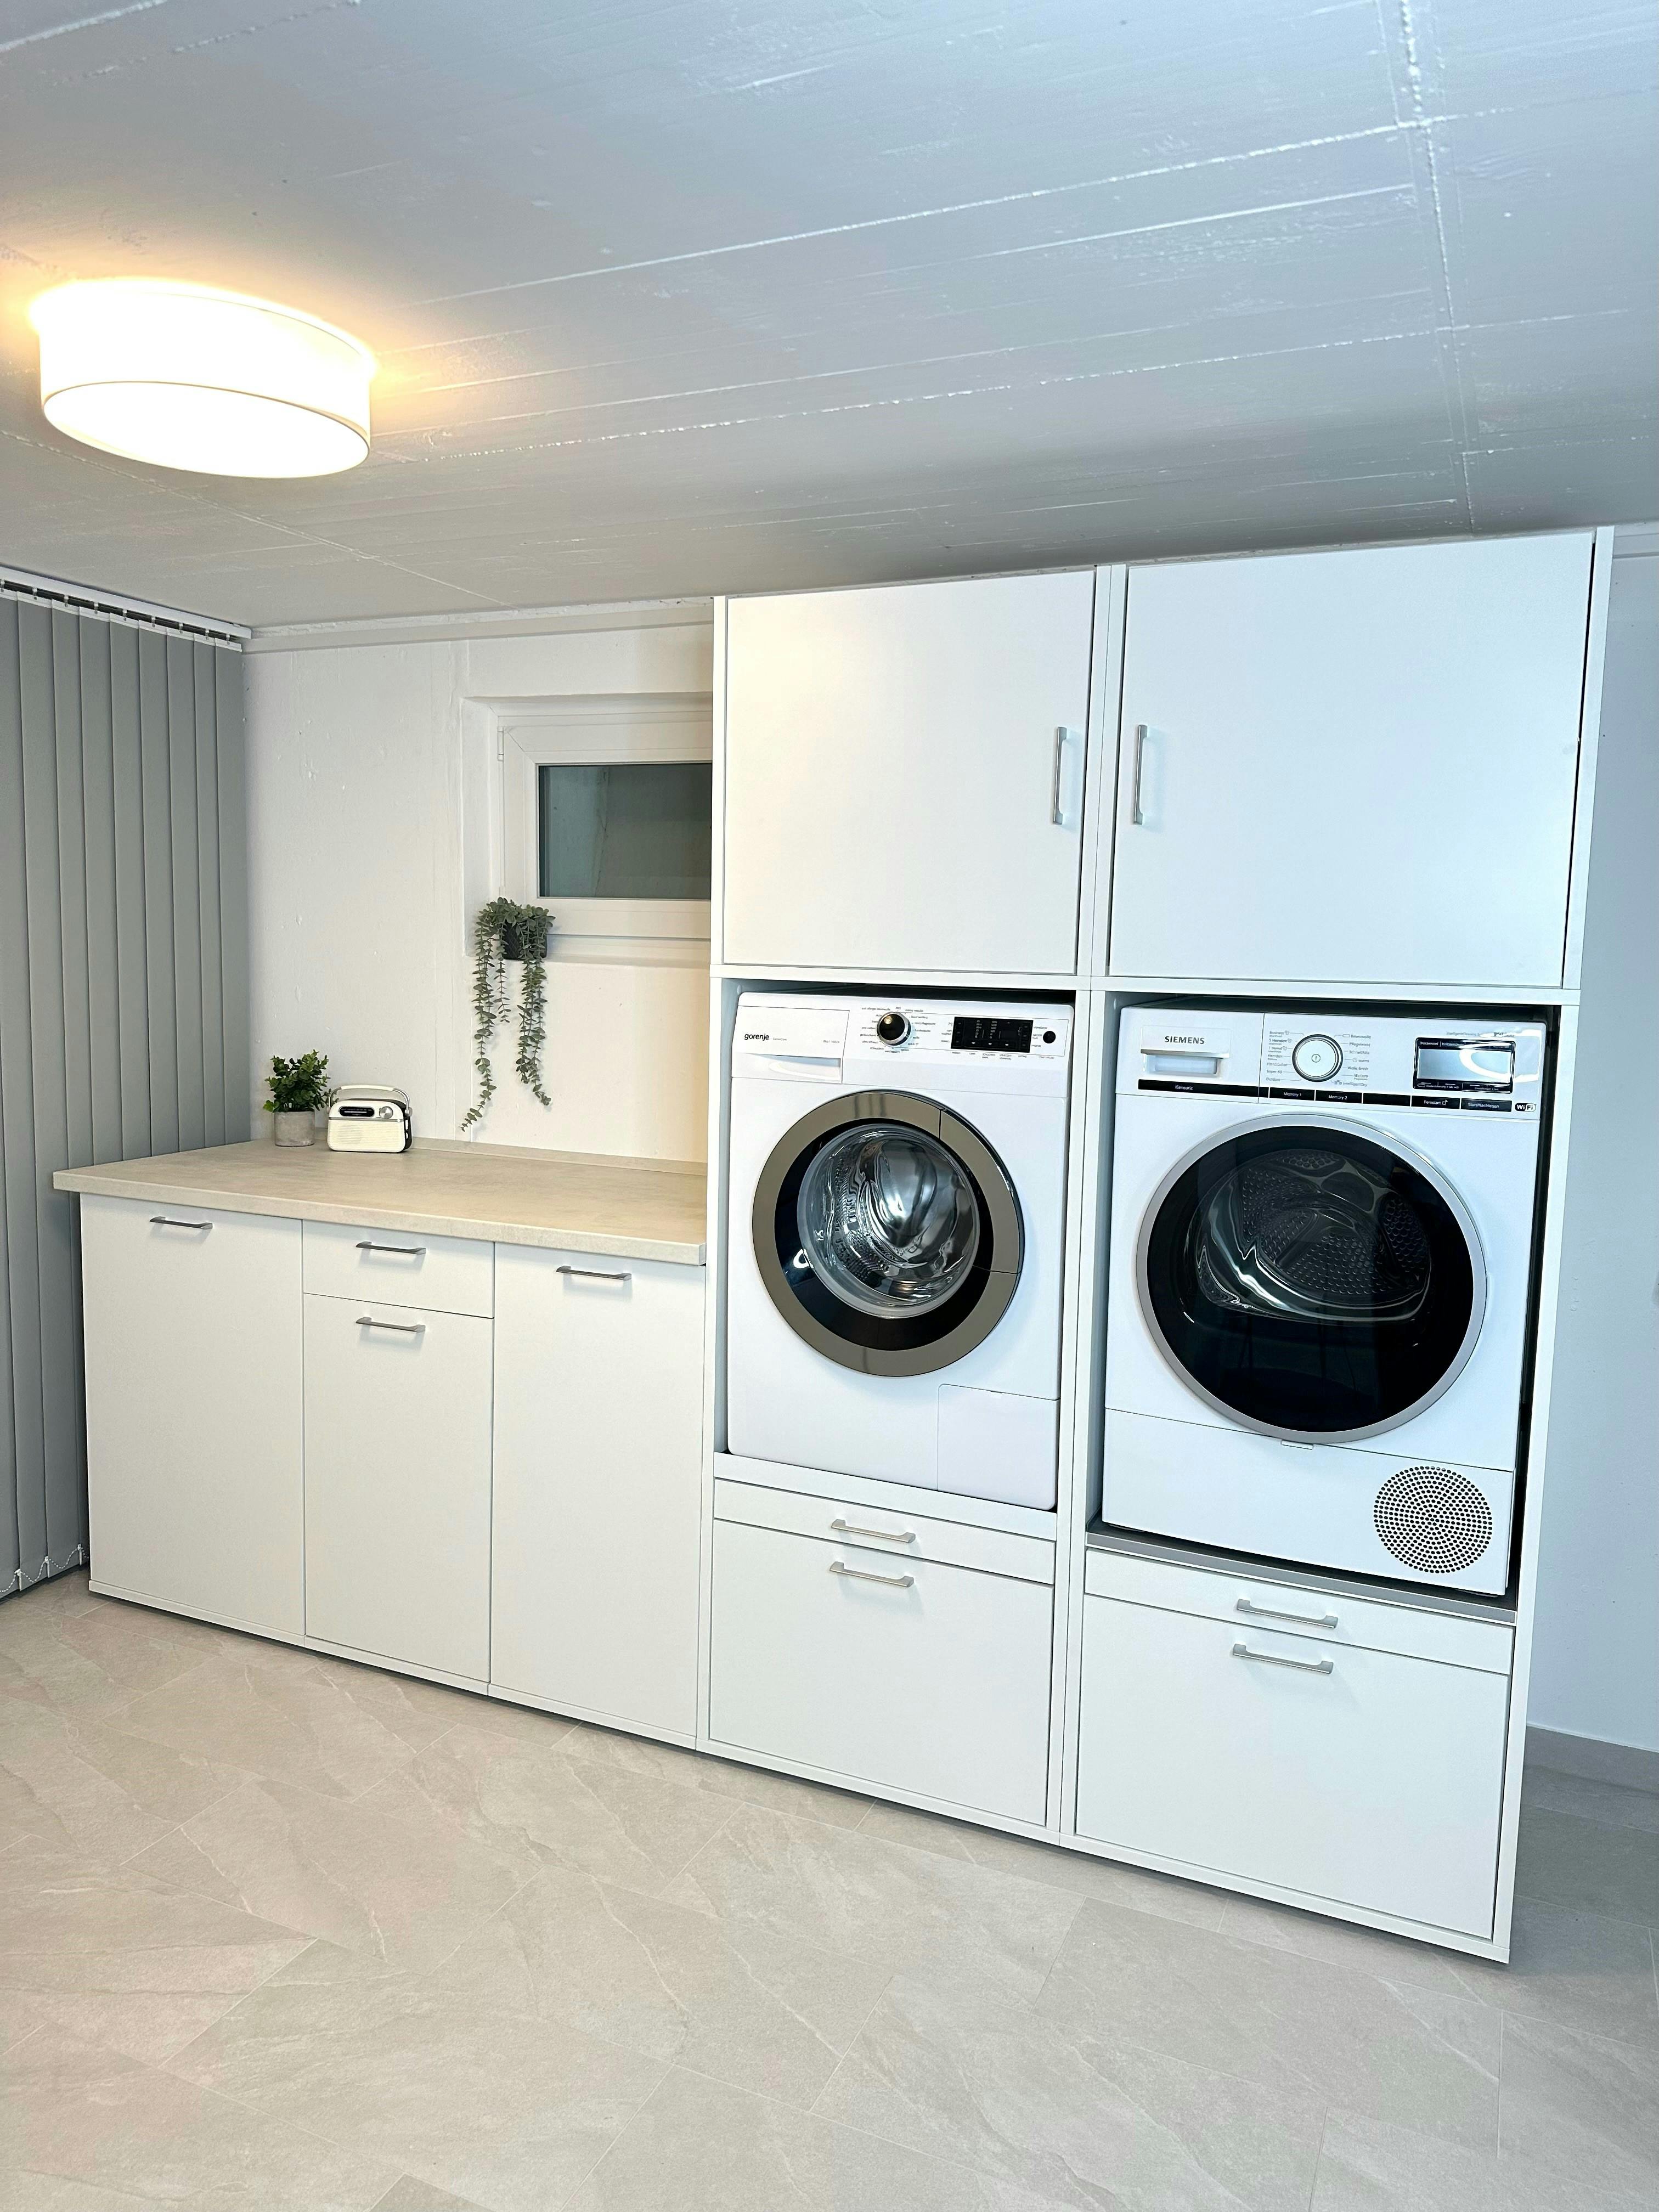 Witte wasmachine kast met keukenblok in berging of garage. Alles is mogelijk met de wasmachinekasten van Wastoren